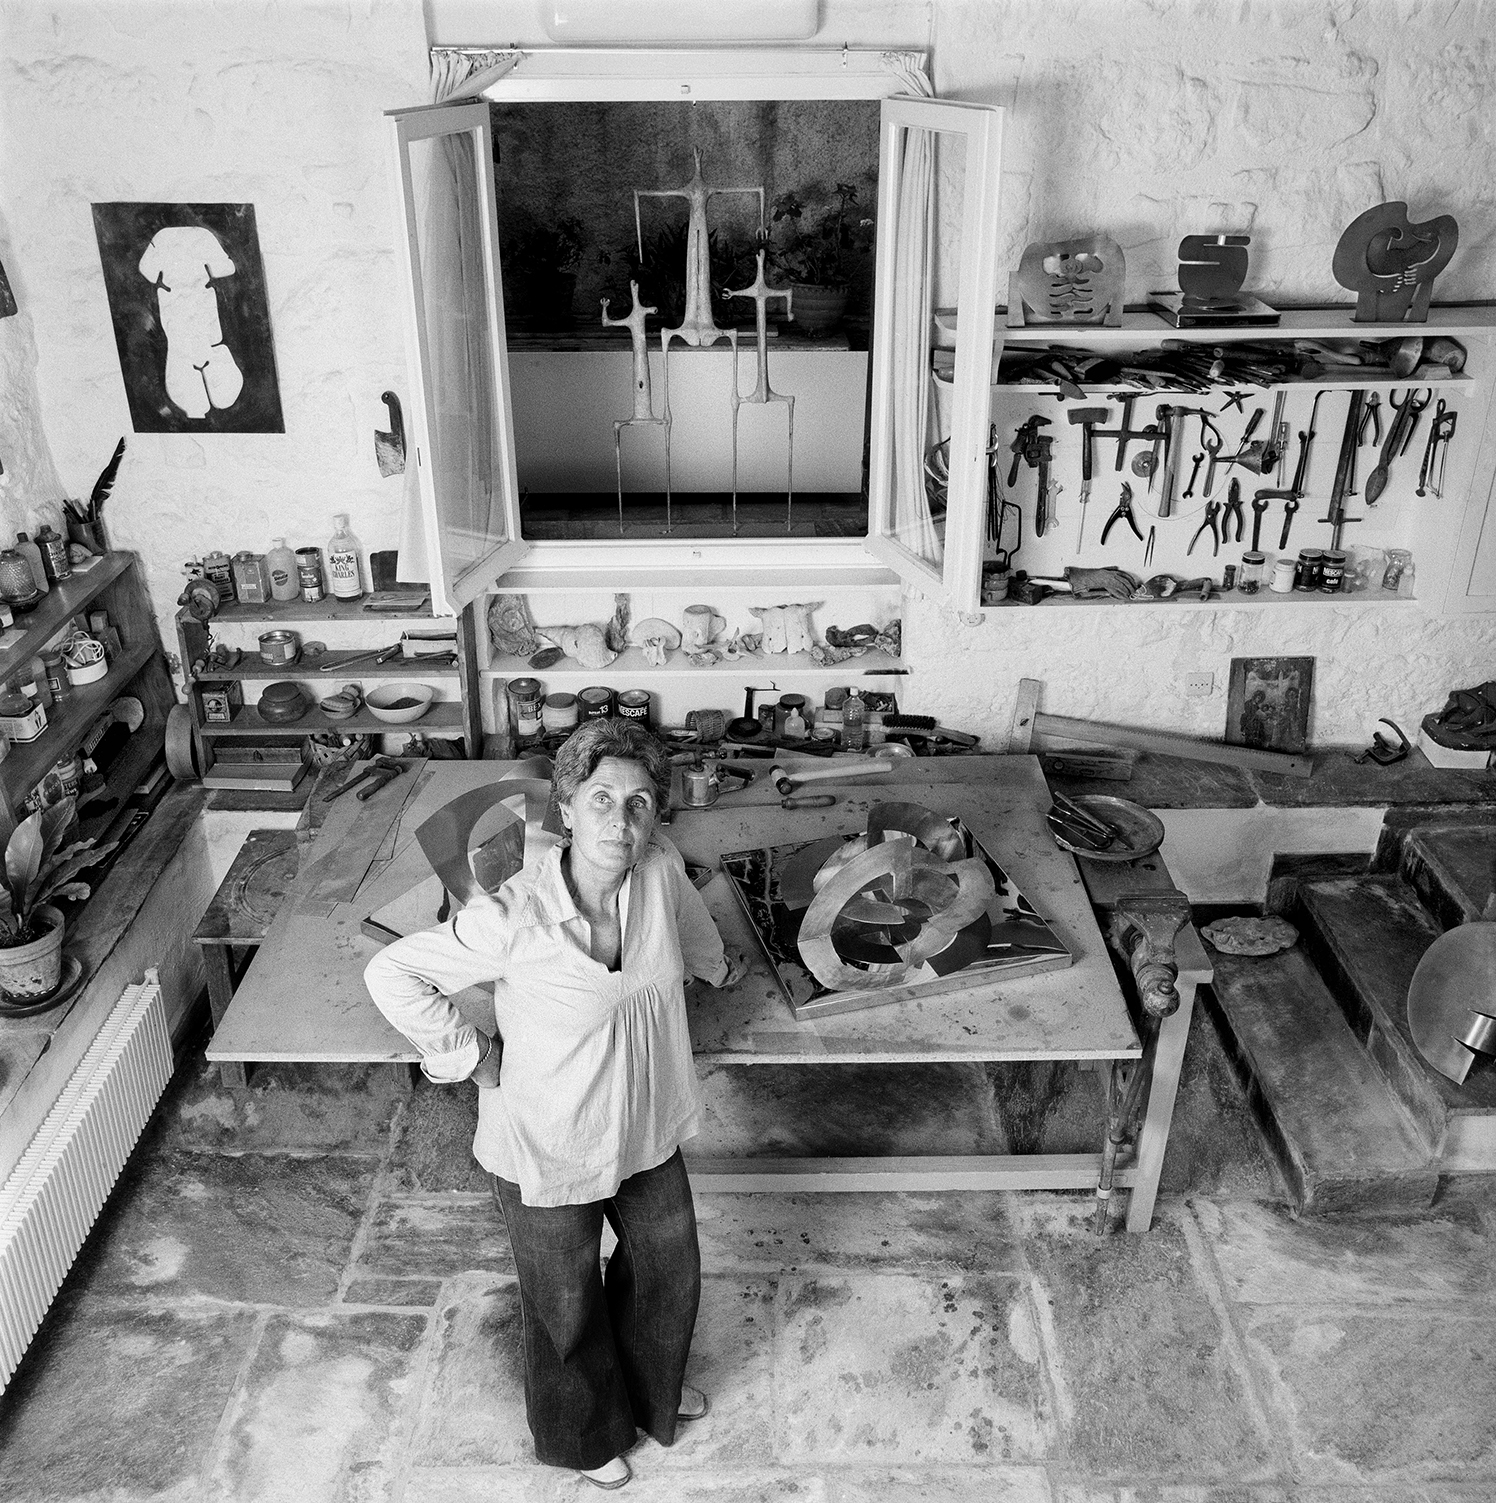 Η Άλεξ Μυλωνά το 1976 στο τελευταίο εργαστήριό της στη Τσάμη Καρατάσου στο Κουκάκι, φωτογραφημένη από την κόρη της Ελένη Μυλωνά. © Eleni Mylonas